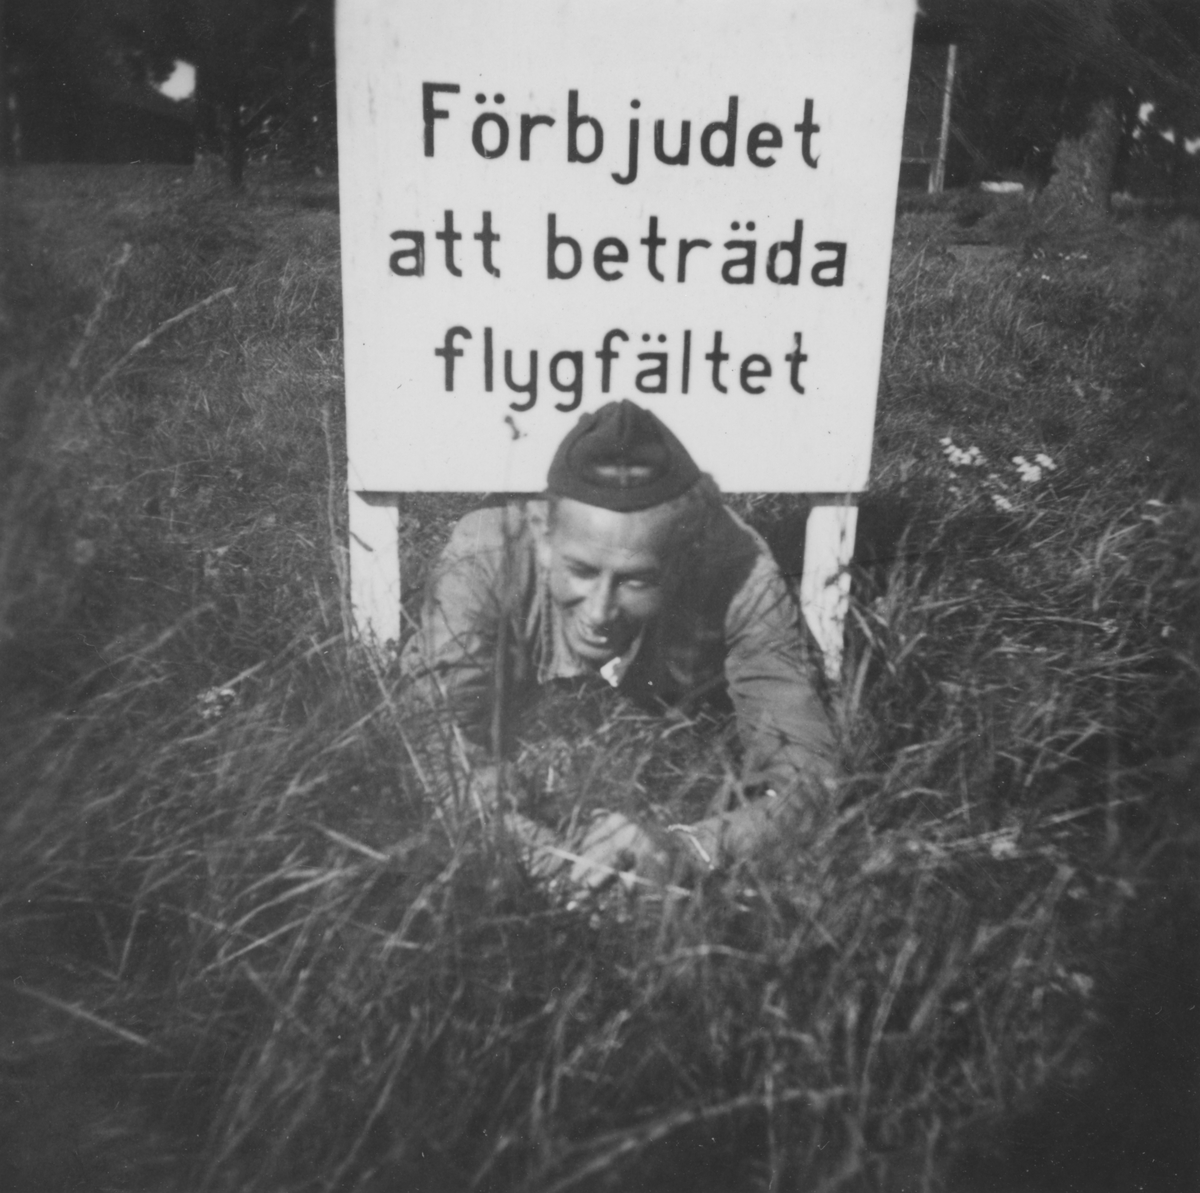 Värnpliktig man vid F 3 Malmen ligger på mage under en skylt med texten "Förbjudet att beträda flygfältet" vid flygdagen Flygets dag på F 3 Malmen, 1938.